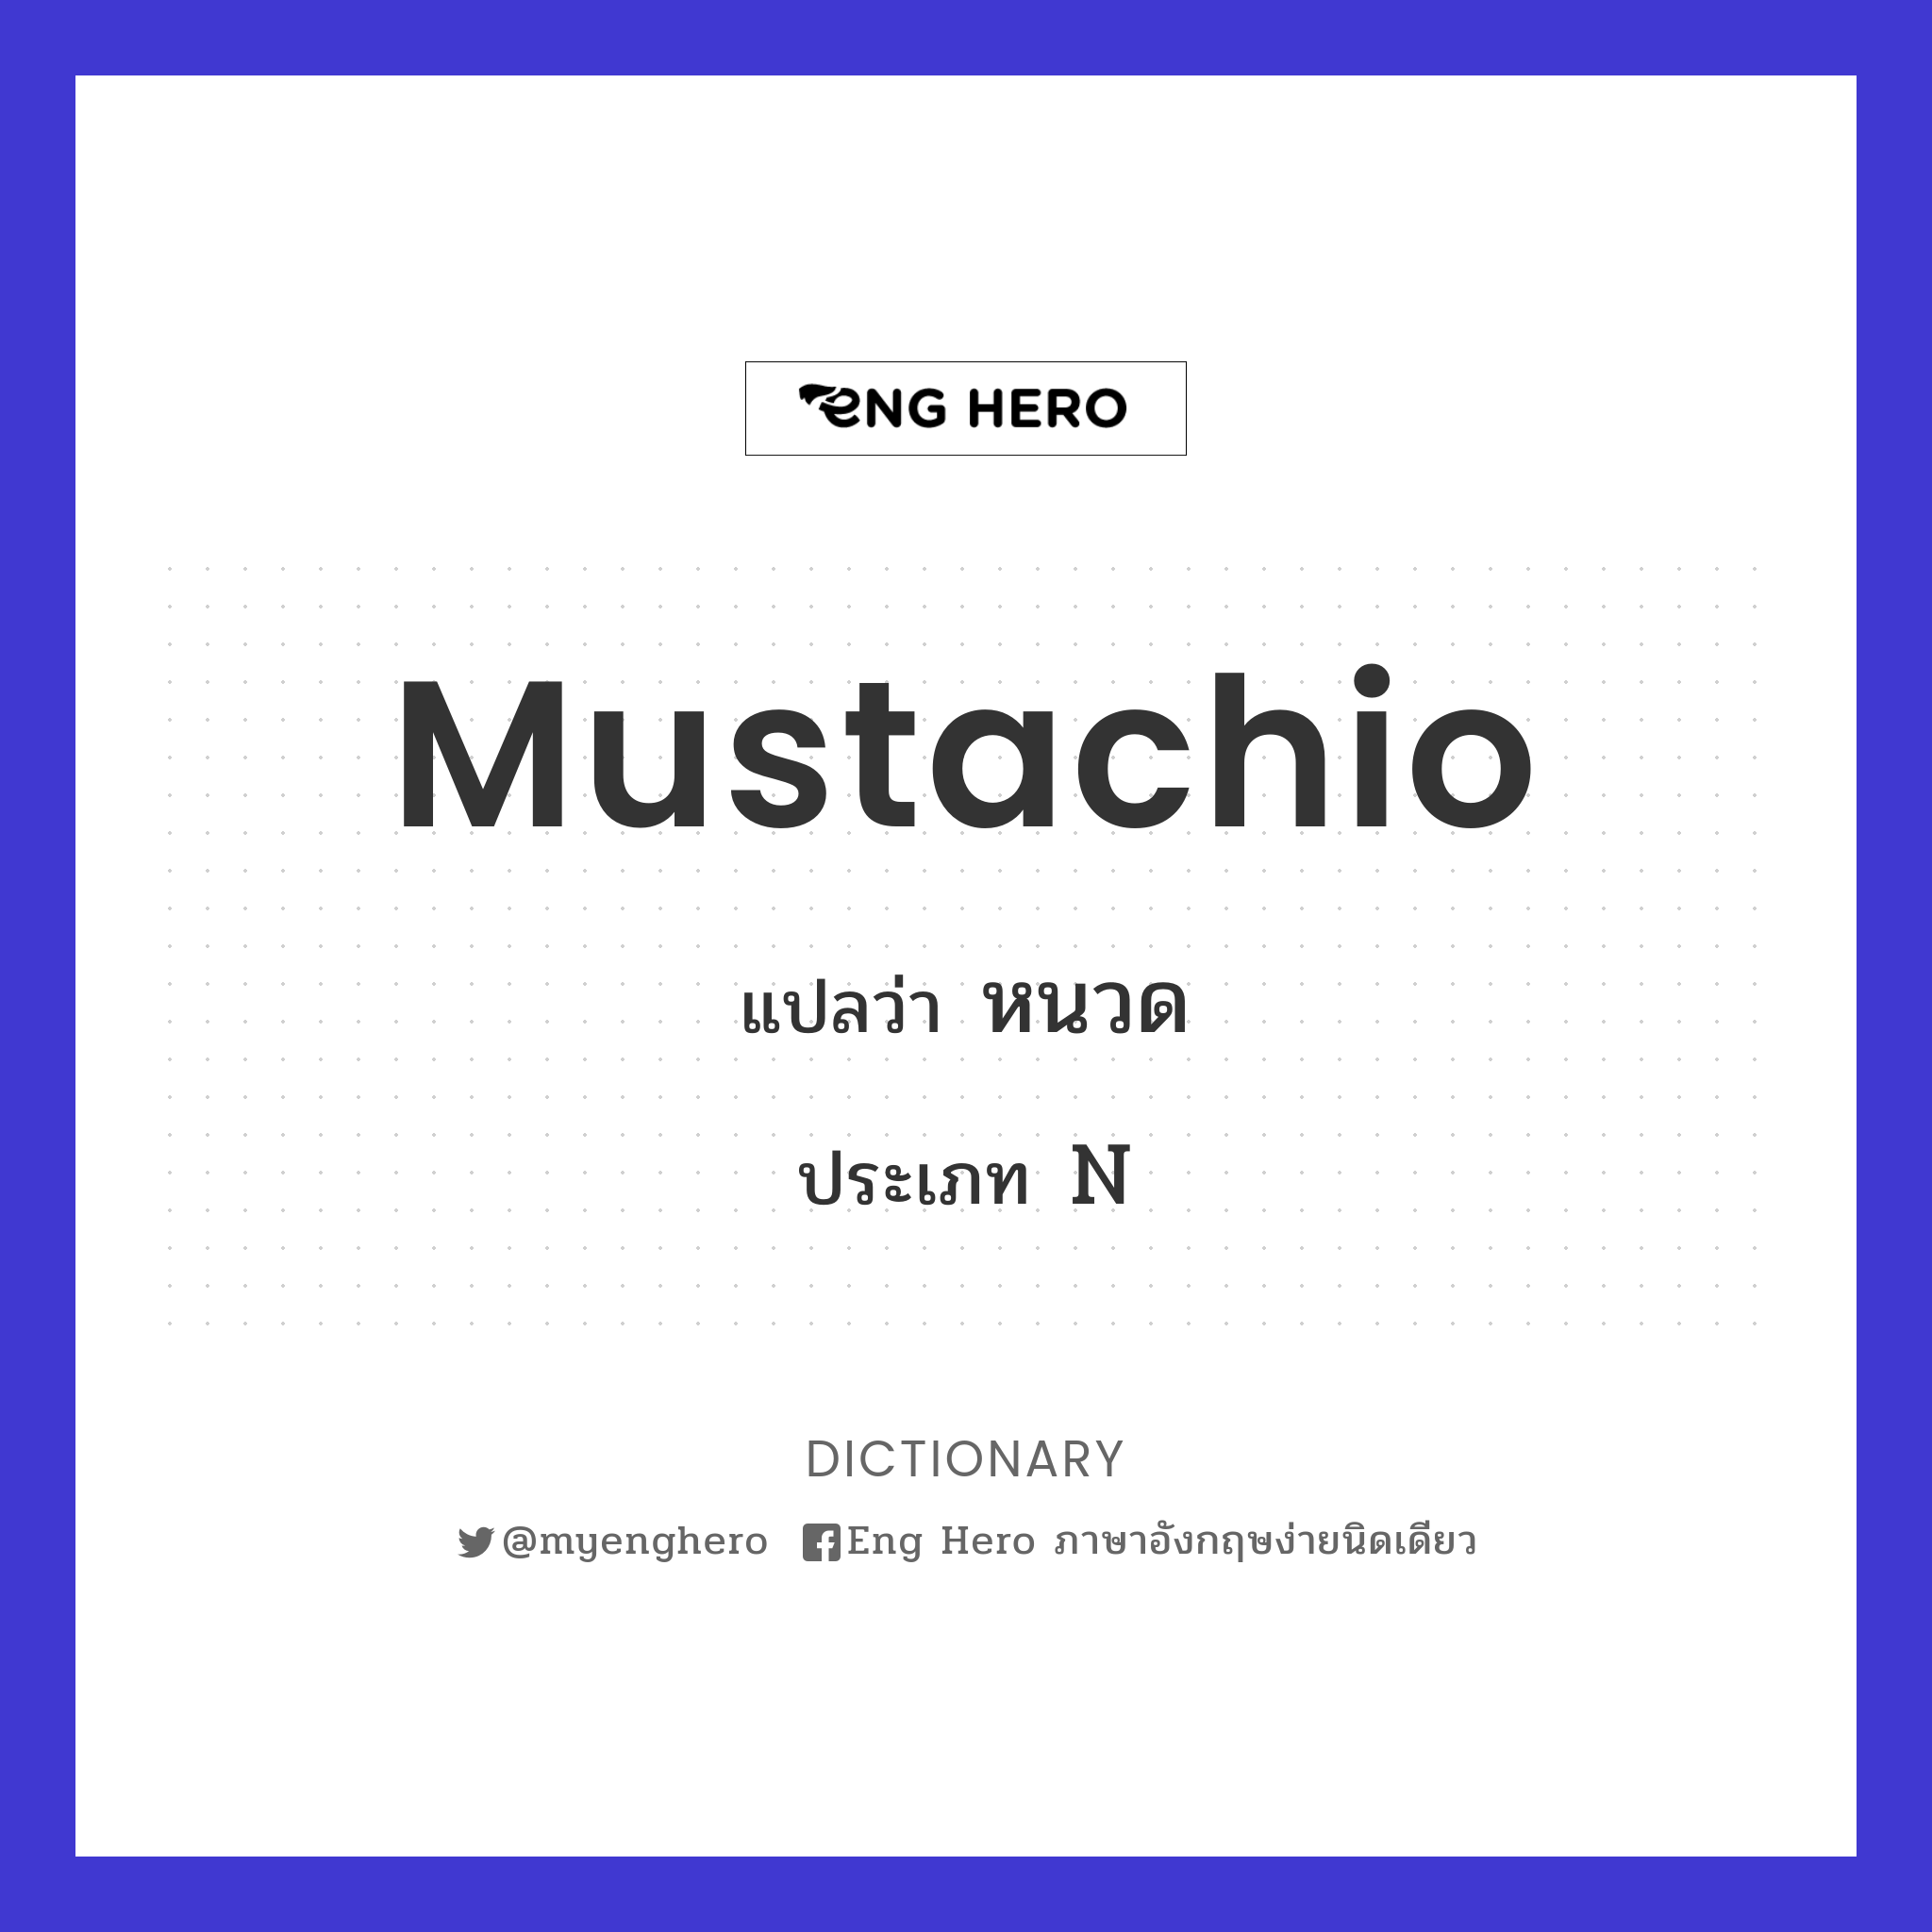 mustachio